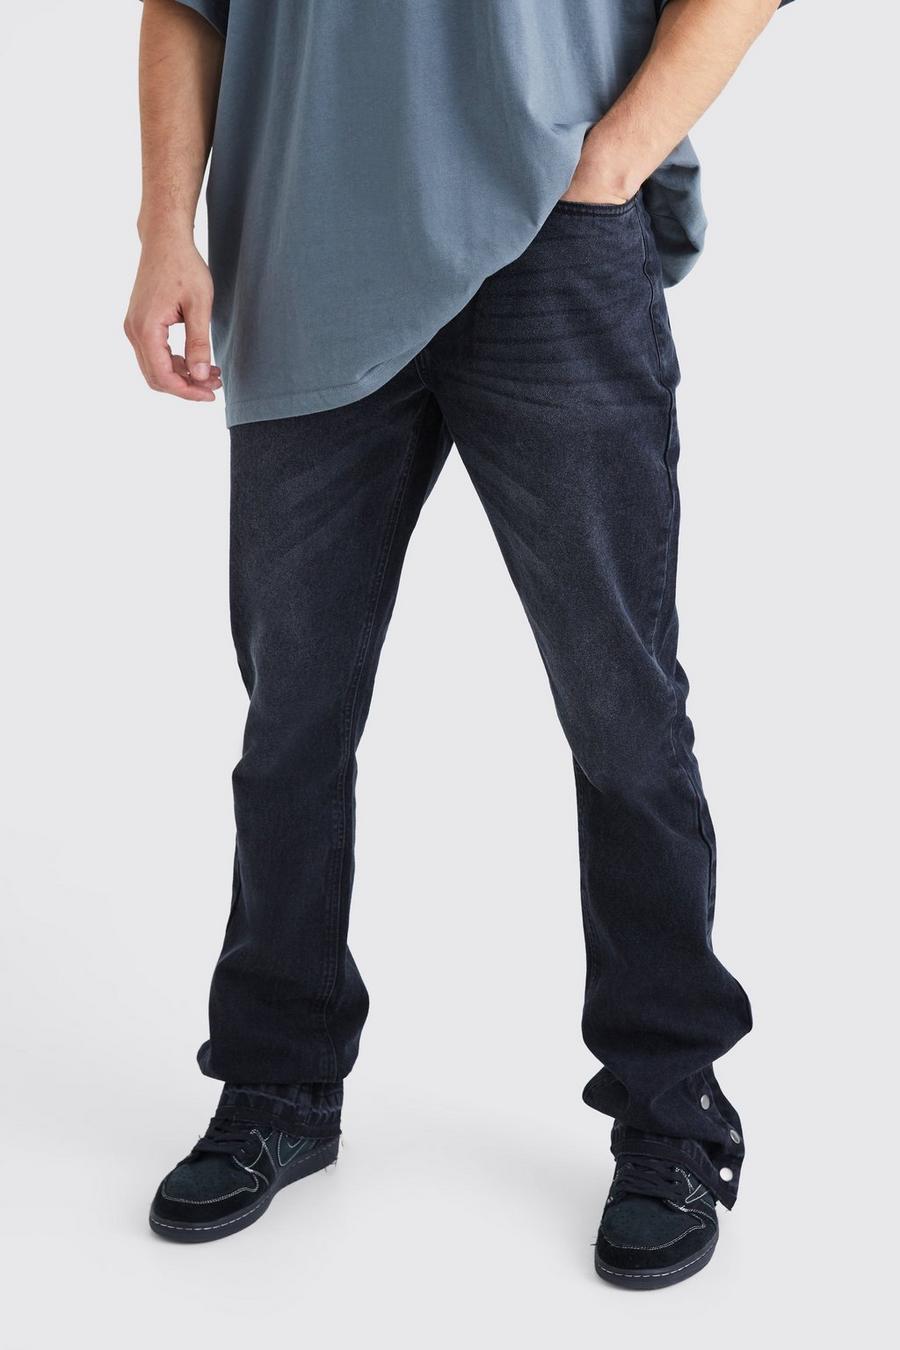 Jeans Tall Slim Fit in denim rigido a zampa con bottoni a pressione sul fondo, Washed black image number 1